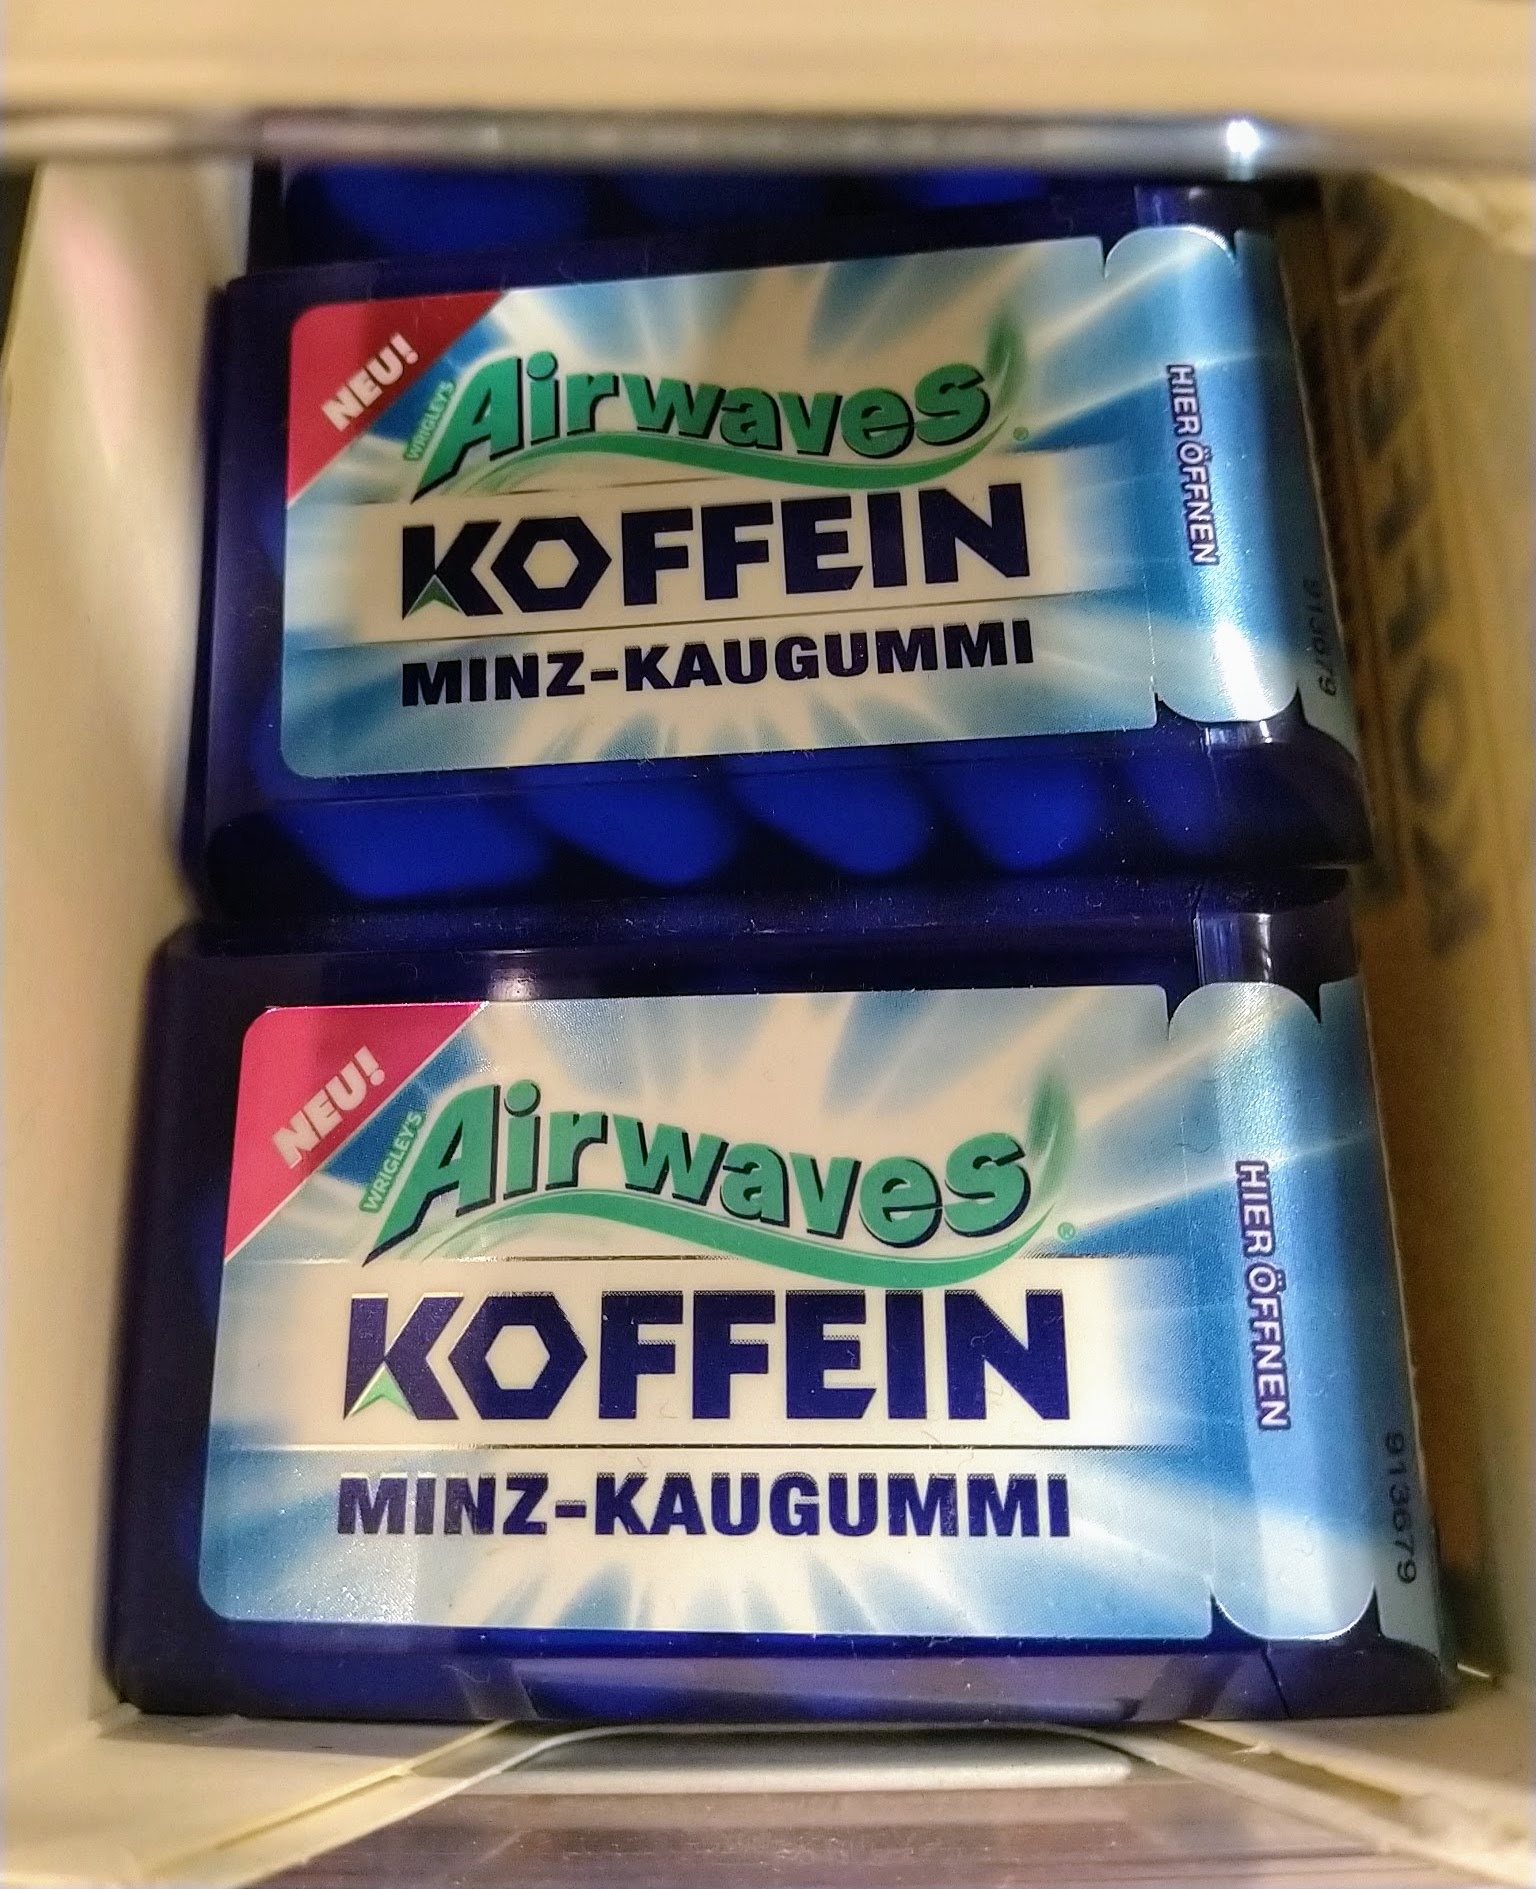 Airwaves Koffein Minz-Kaugummi